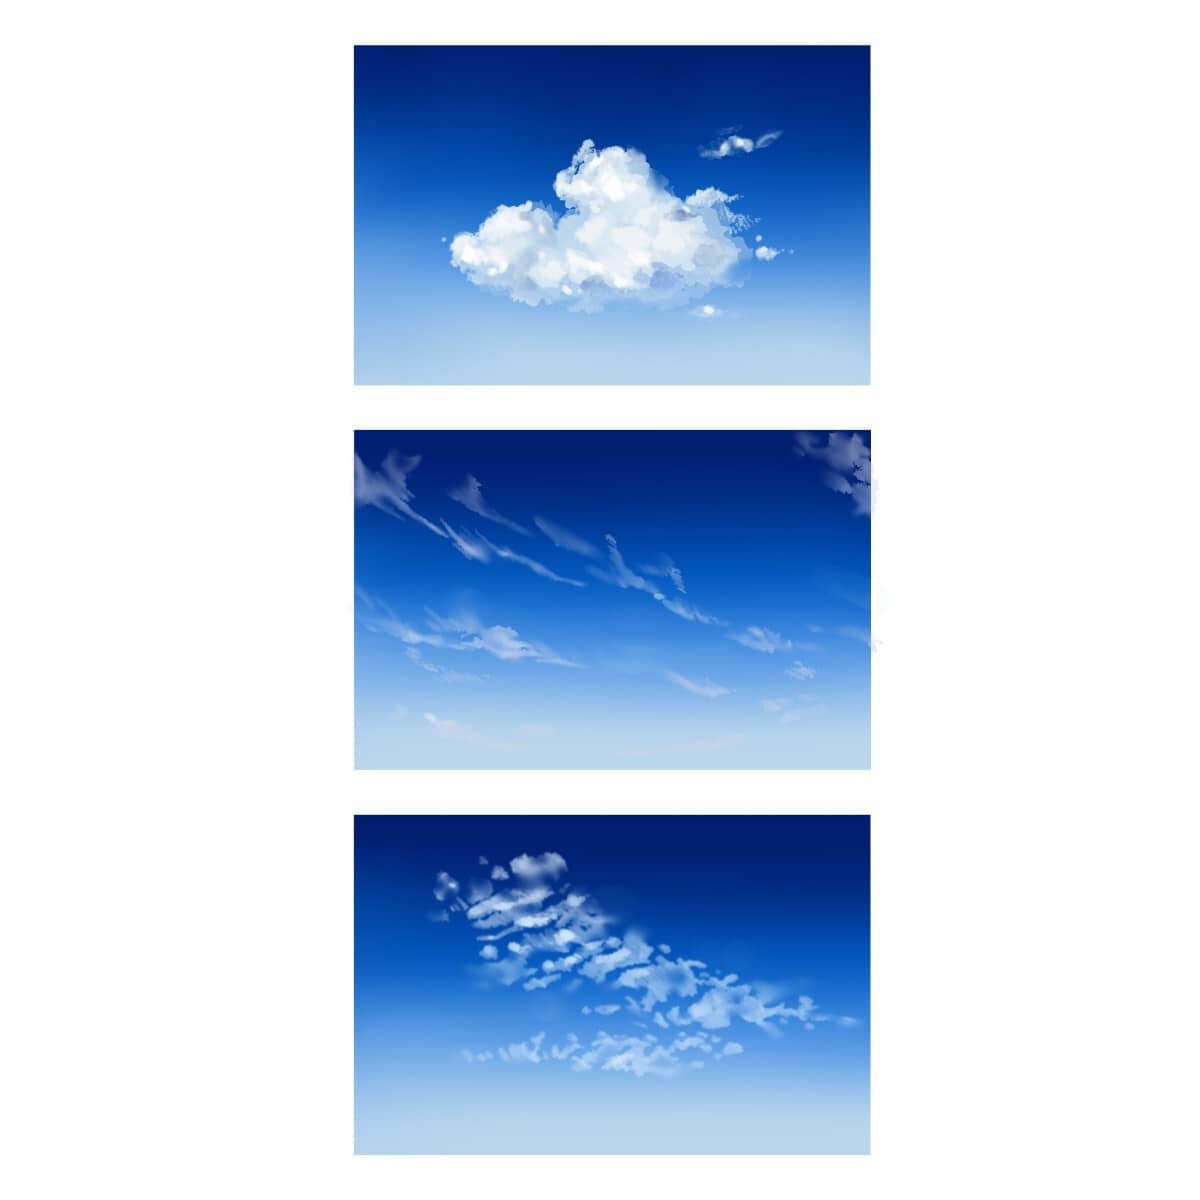 Ch7 作業三 雲的練習 Photoshop 場景美術課 畫出日系空氣感的場景電繪 Ppa線上課程學習平台